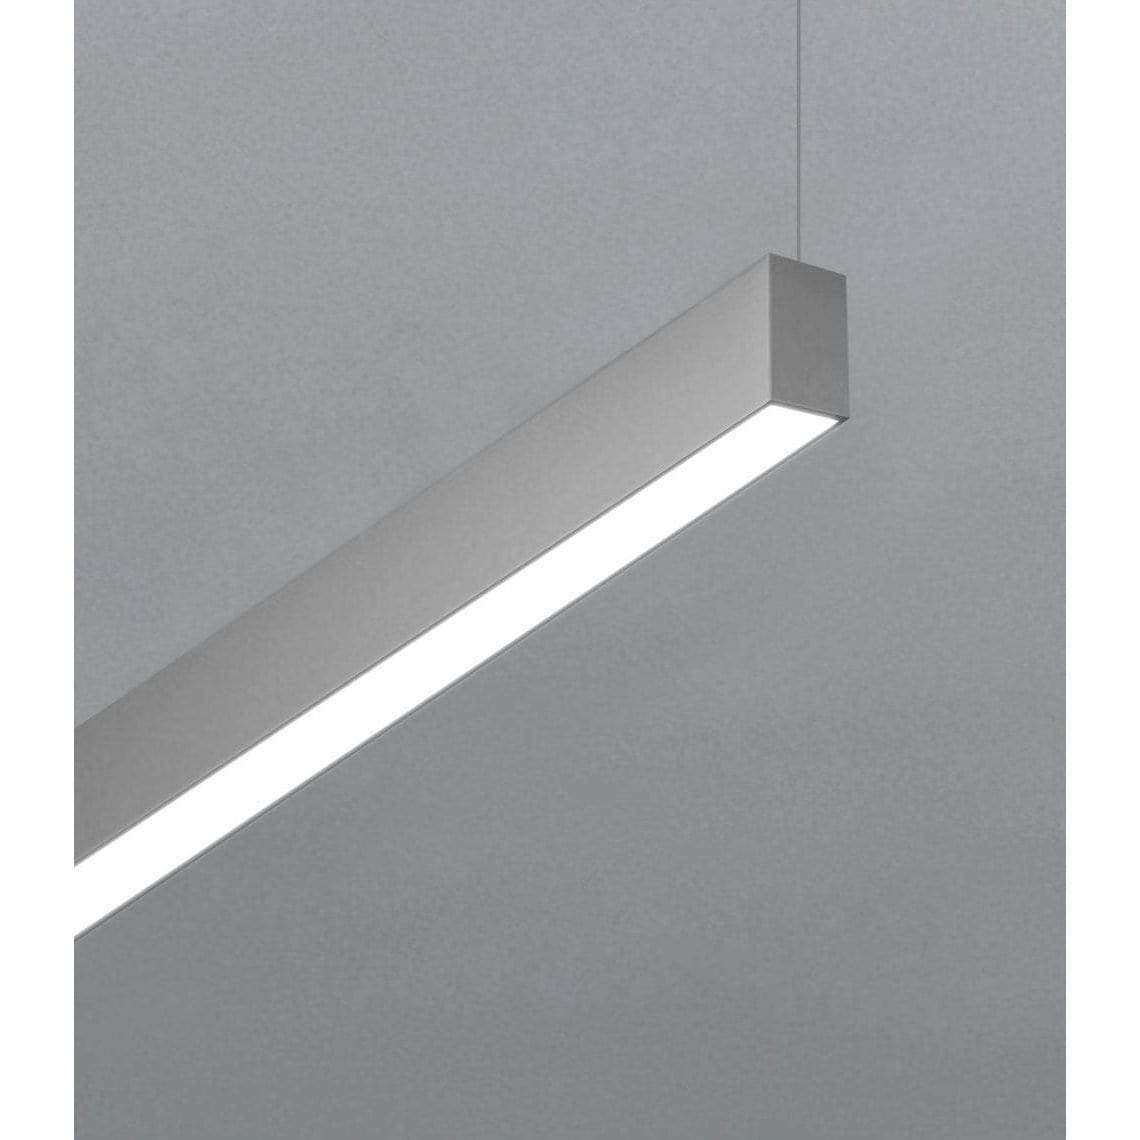 POE Texas Lighting Denton Suspended Linear PoE Lights - Sample 1.3" x 8' Linear Diffuser 8 ft, 4000K (Pendant)